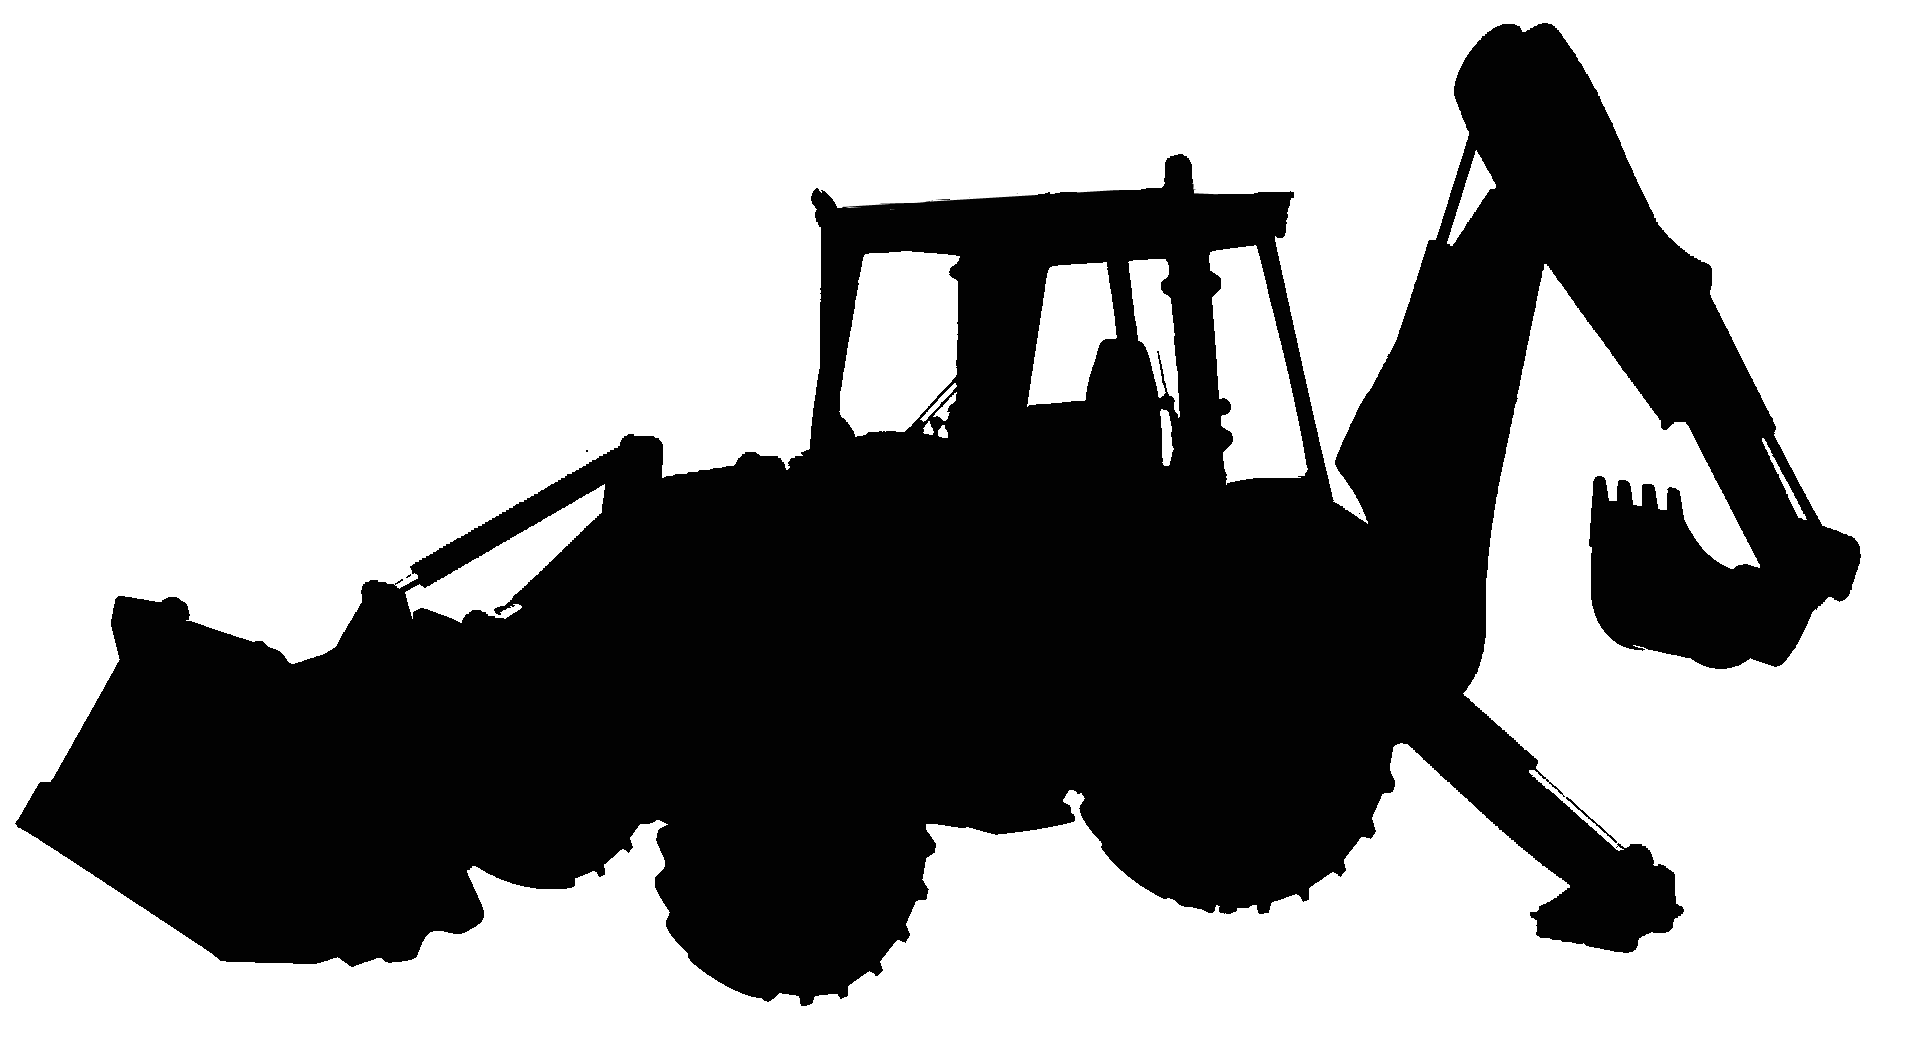 Icon santiago landscape maintenance. Excavator clipart construction